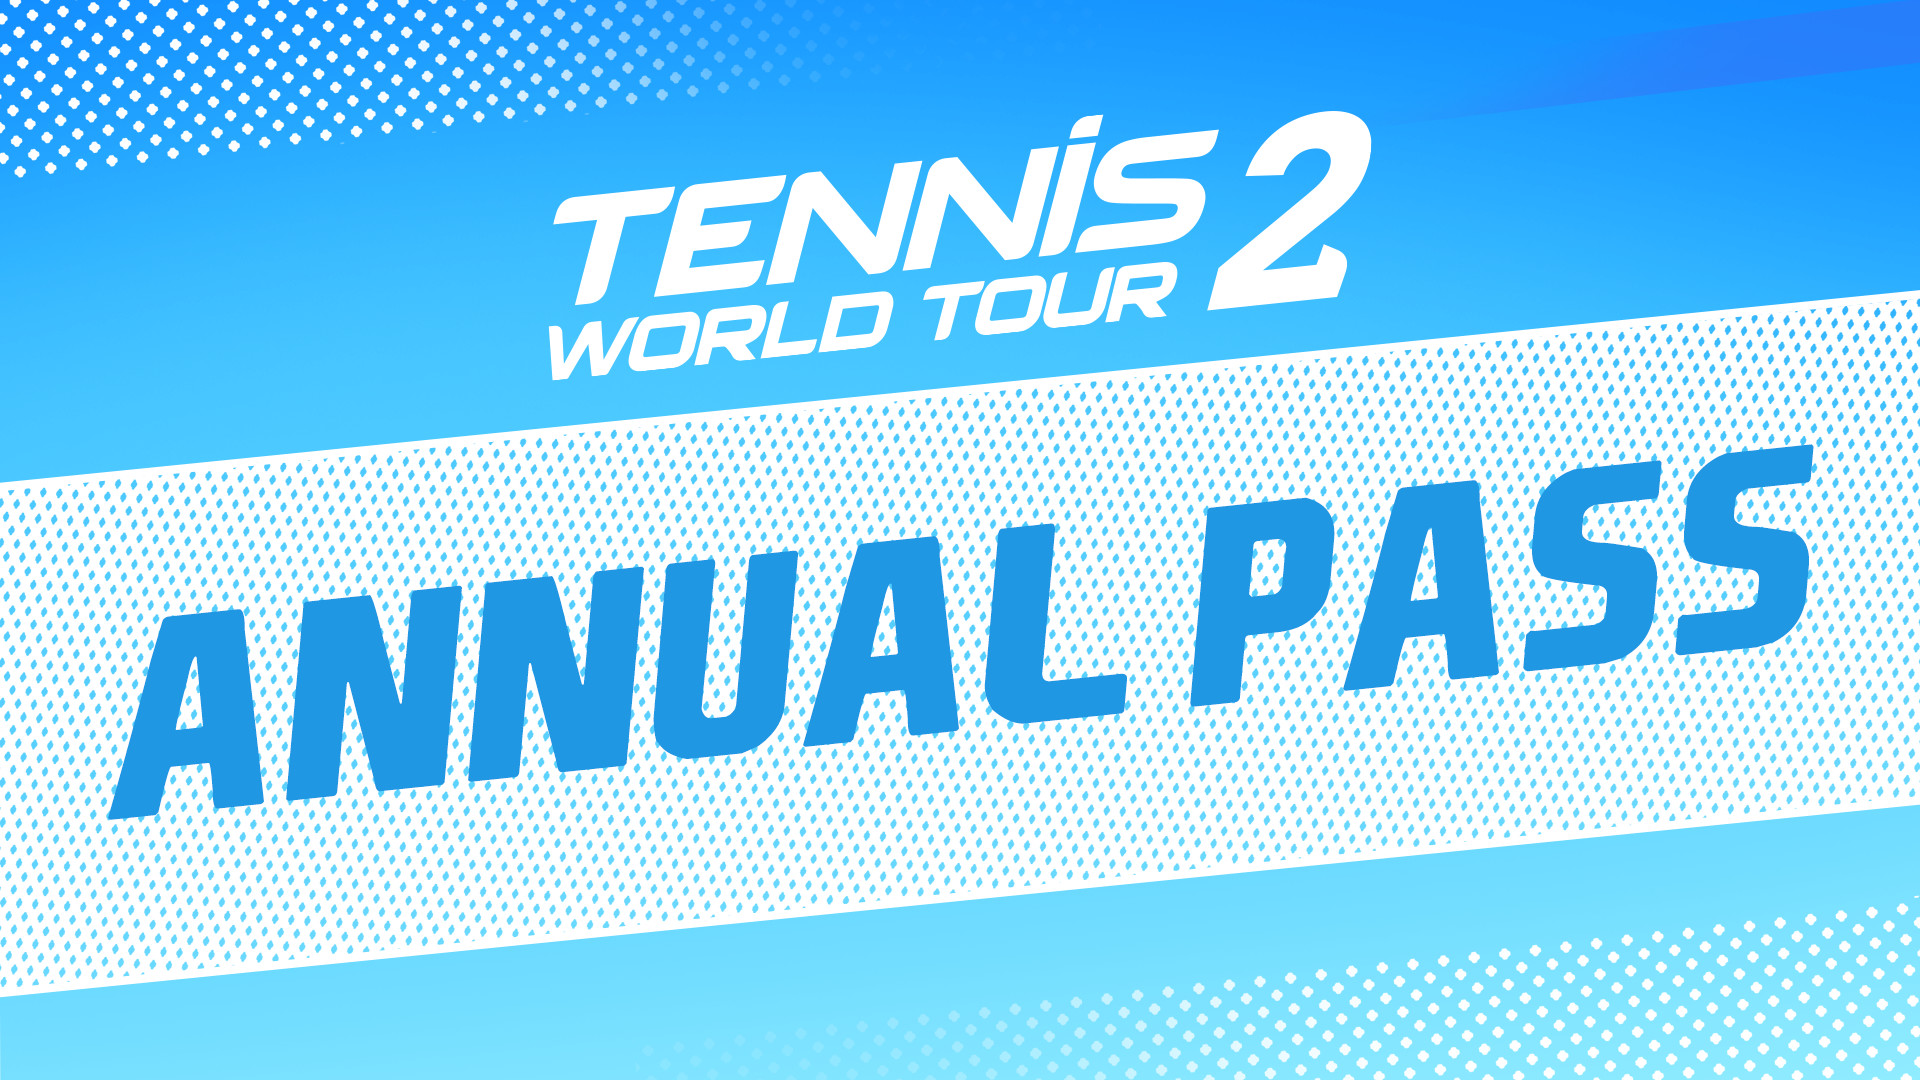 Tennis World Tour 2 - Annual Pass DLC Steam CD Key 7.23 $